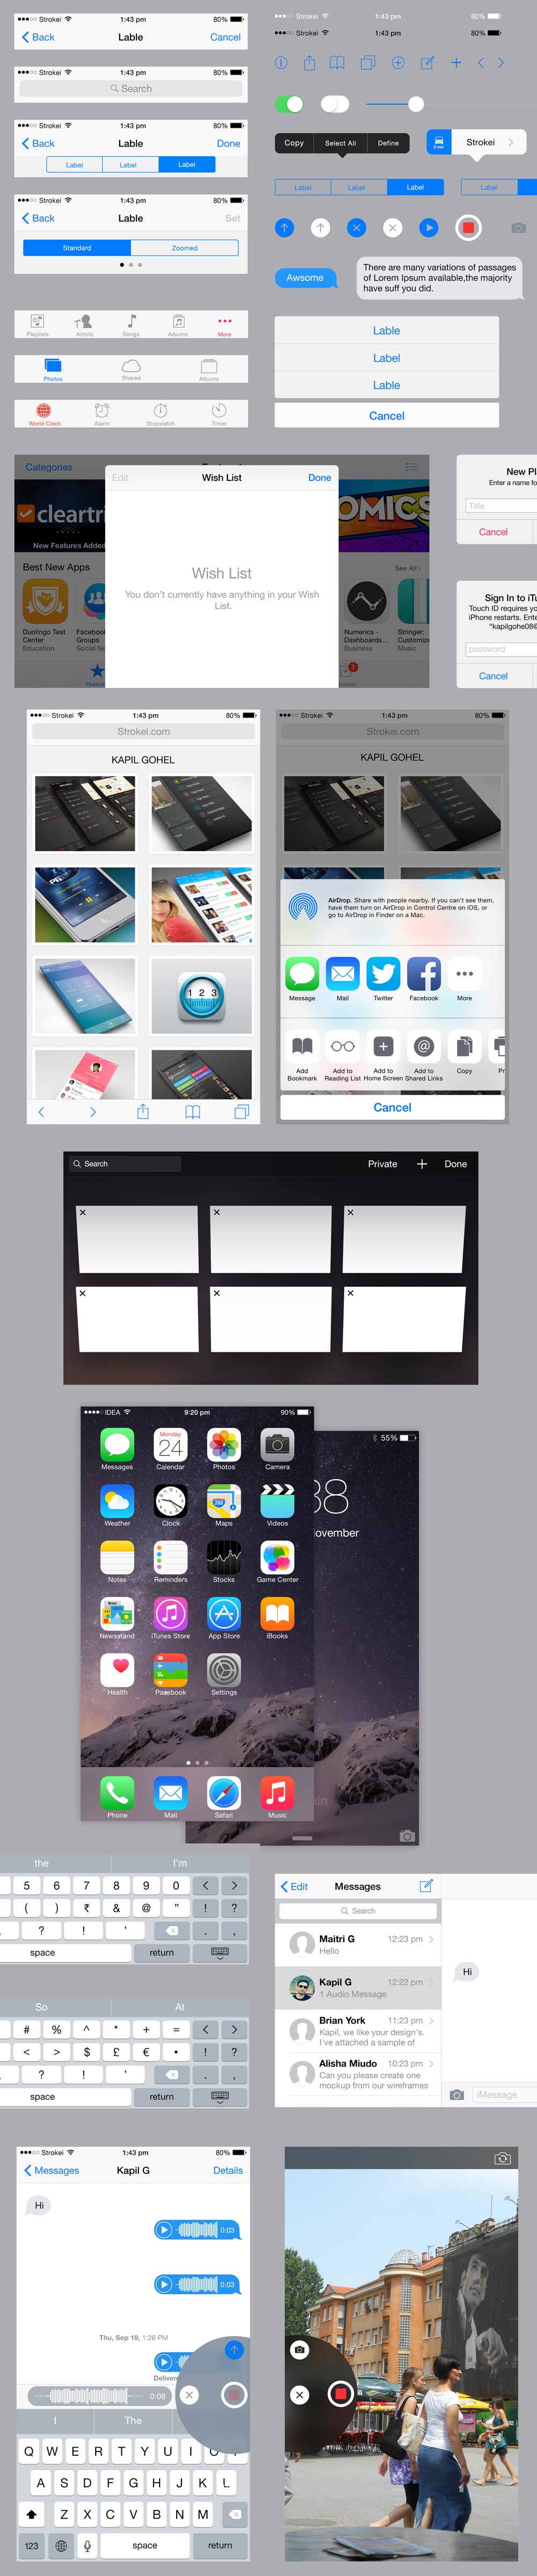 iOS 8 UI Kit